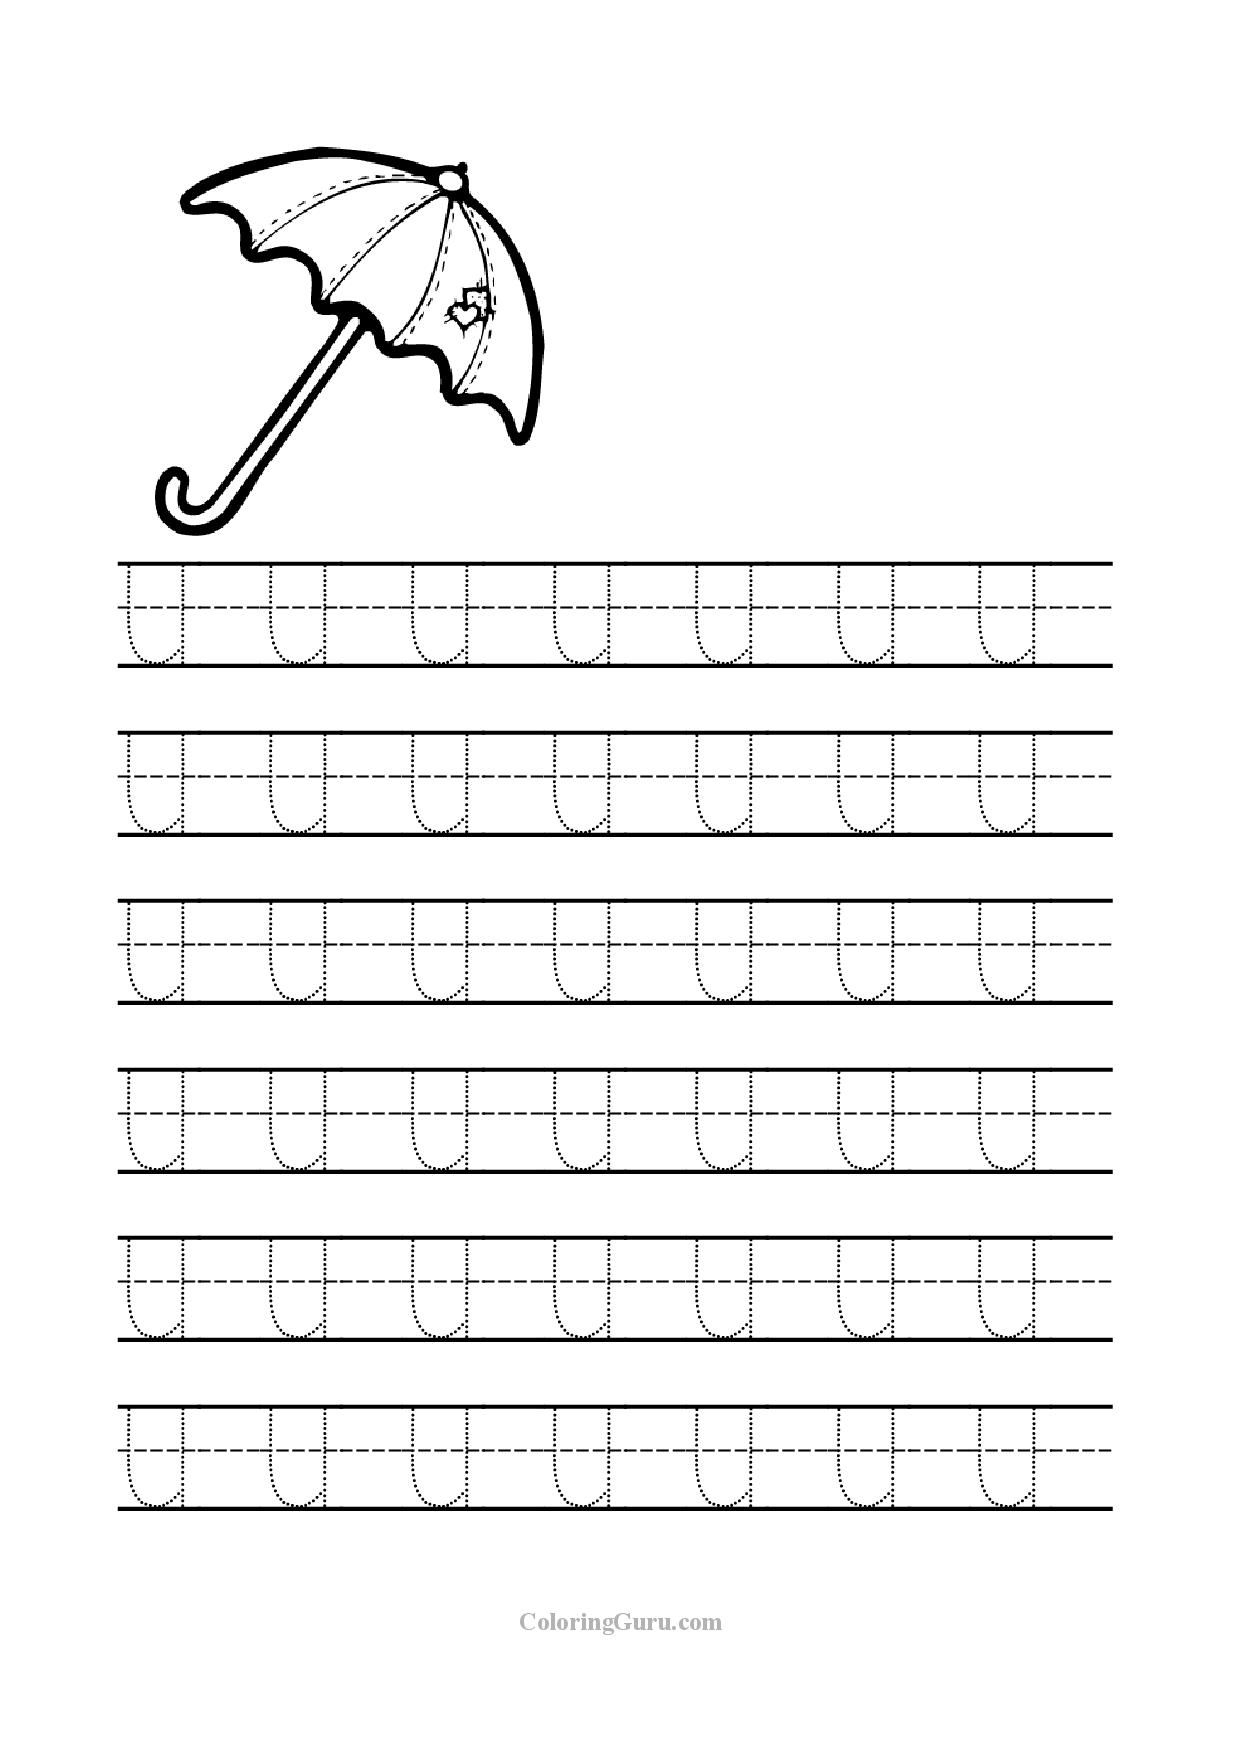 Free Printable Tracing Letter U Worksheets For Preschool intended for Letter U Worksheets For Pre-K